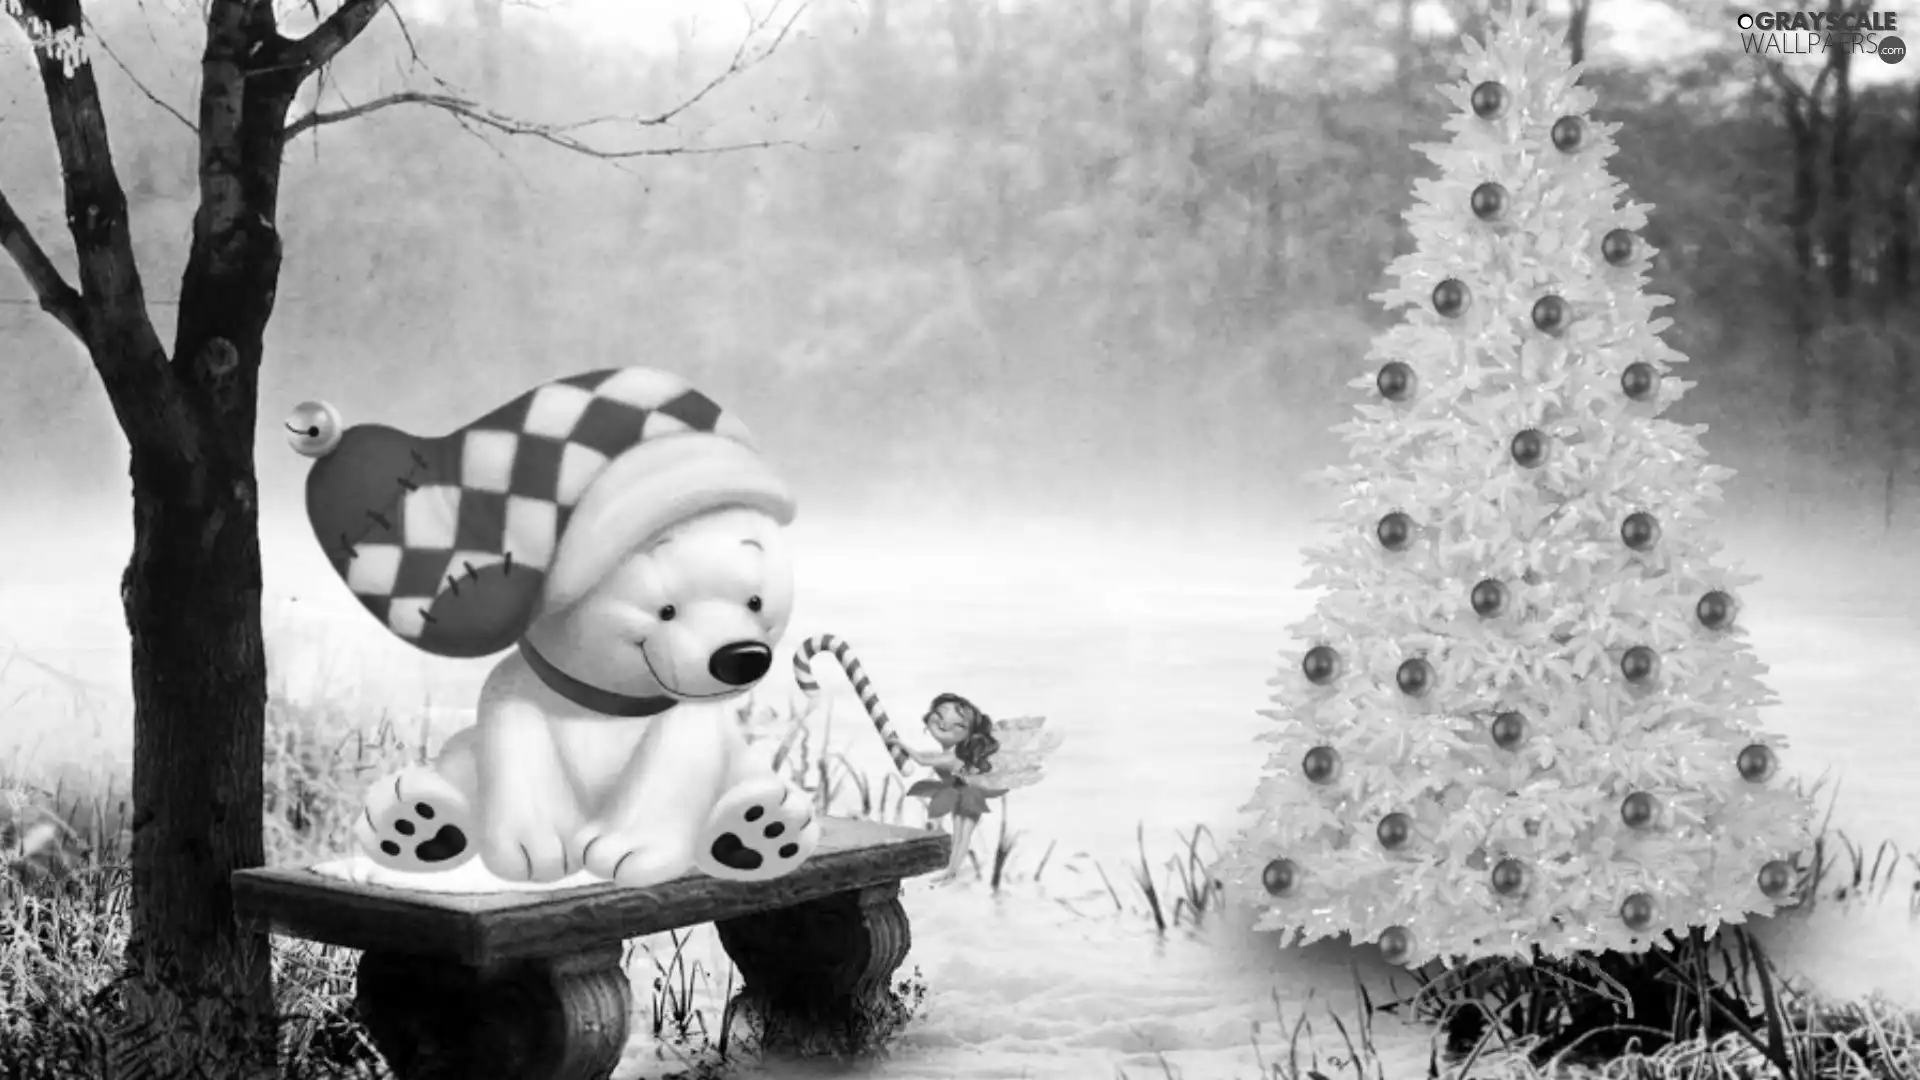 forest, teddy bear, christmas tree